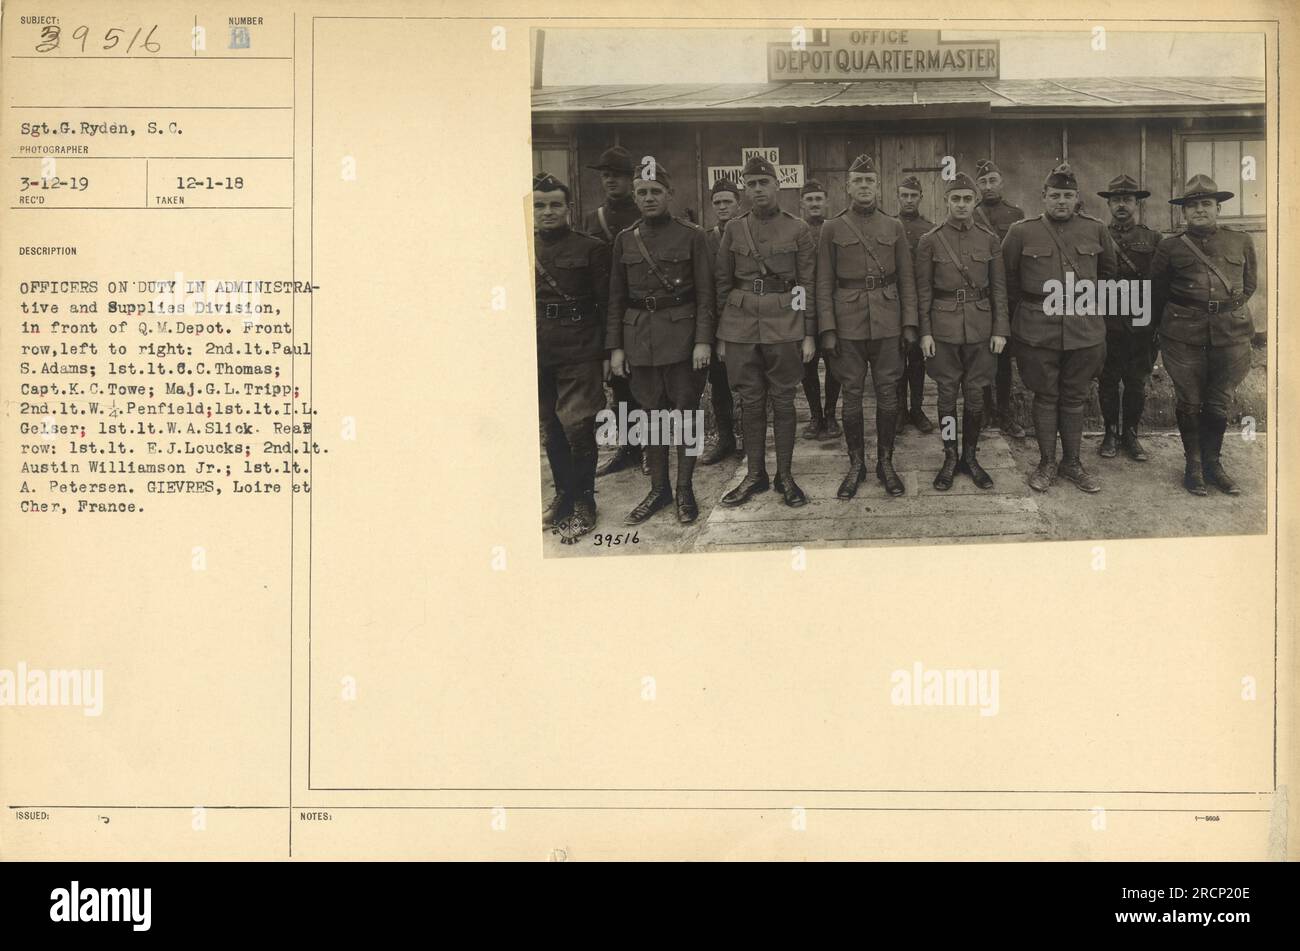 Offiziere der Abteilung Verwaltung und Versorgung des US-Militärs werden vor dem Q.M. gesehen Depot in Gievres, Frankreich. Das Foto enthält 2. LT. Paul S. Adams, 1. LT. C.C. Thomas, Kapitän K.C. Towe, Major G.L. Tripp, 2. LT. W. Penfield, 1. LT. I.L. Gelser, 1. Leutnant W.A. Slick, 1. Leutnant E.J. Loucks, 2. LT. Austin Williamson Jr. und 1. LT. A. Petersen. Dieses Foto wurde am 12. März 1919 aufgenommen. Stockfoto